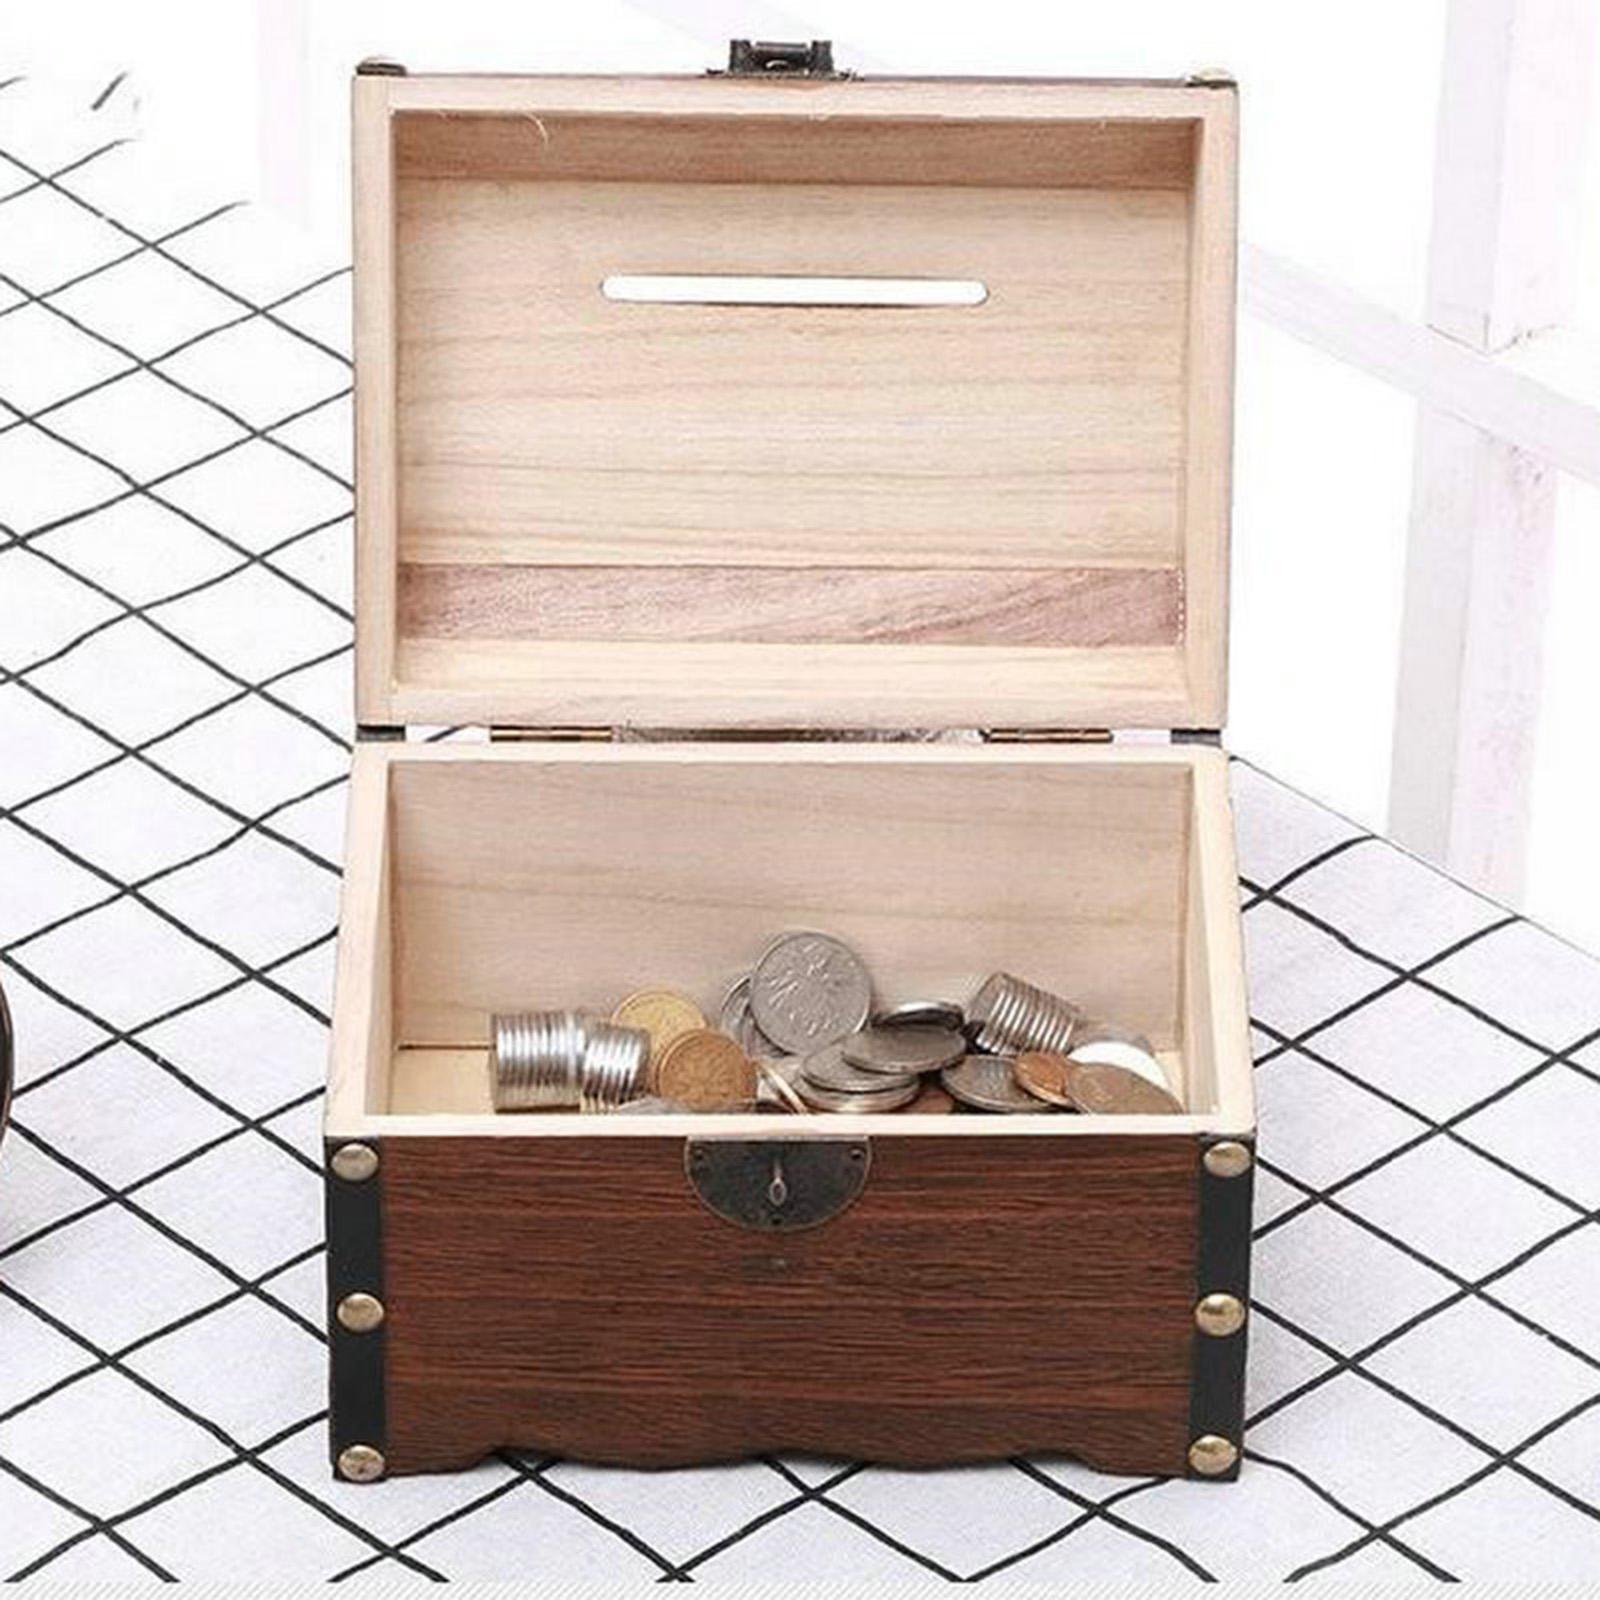 2xWooden Treasure Chest Retro Money Storage Box Case Coin Piggy Bank Organizer